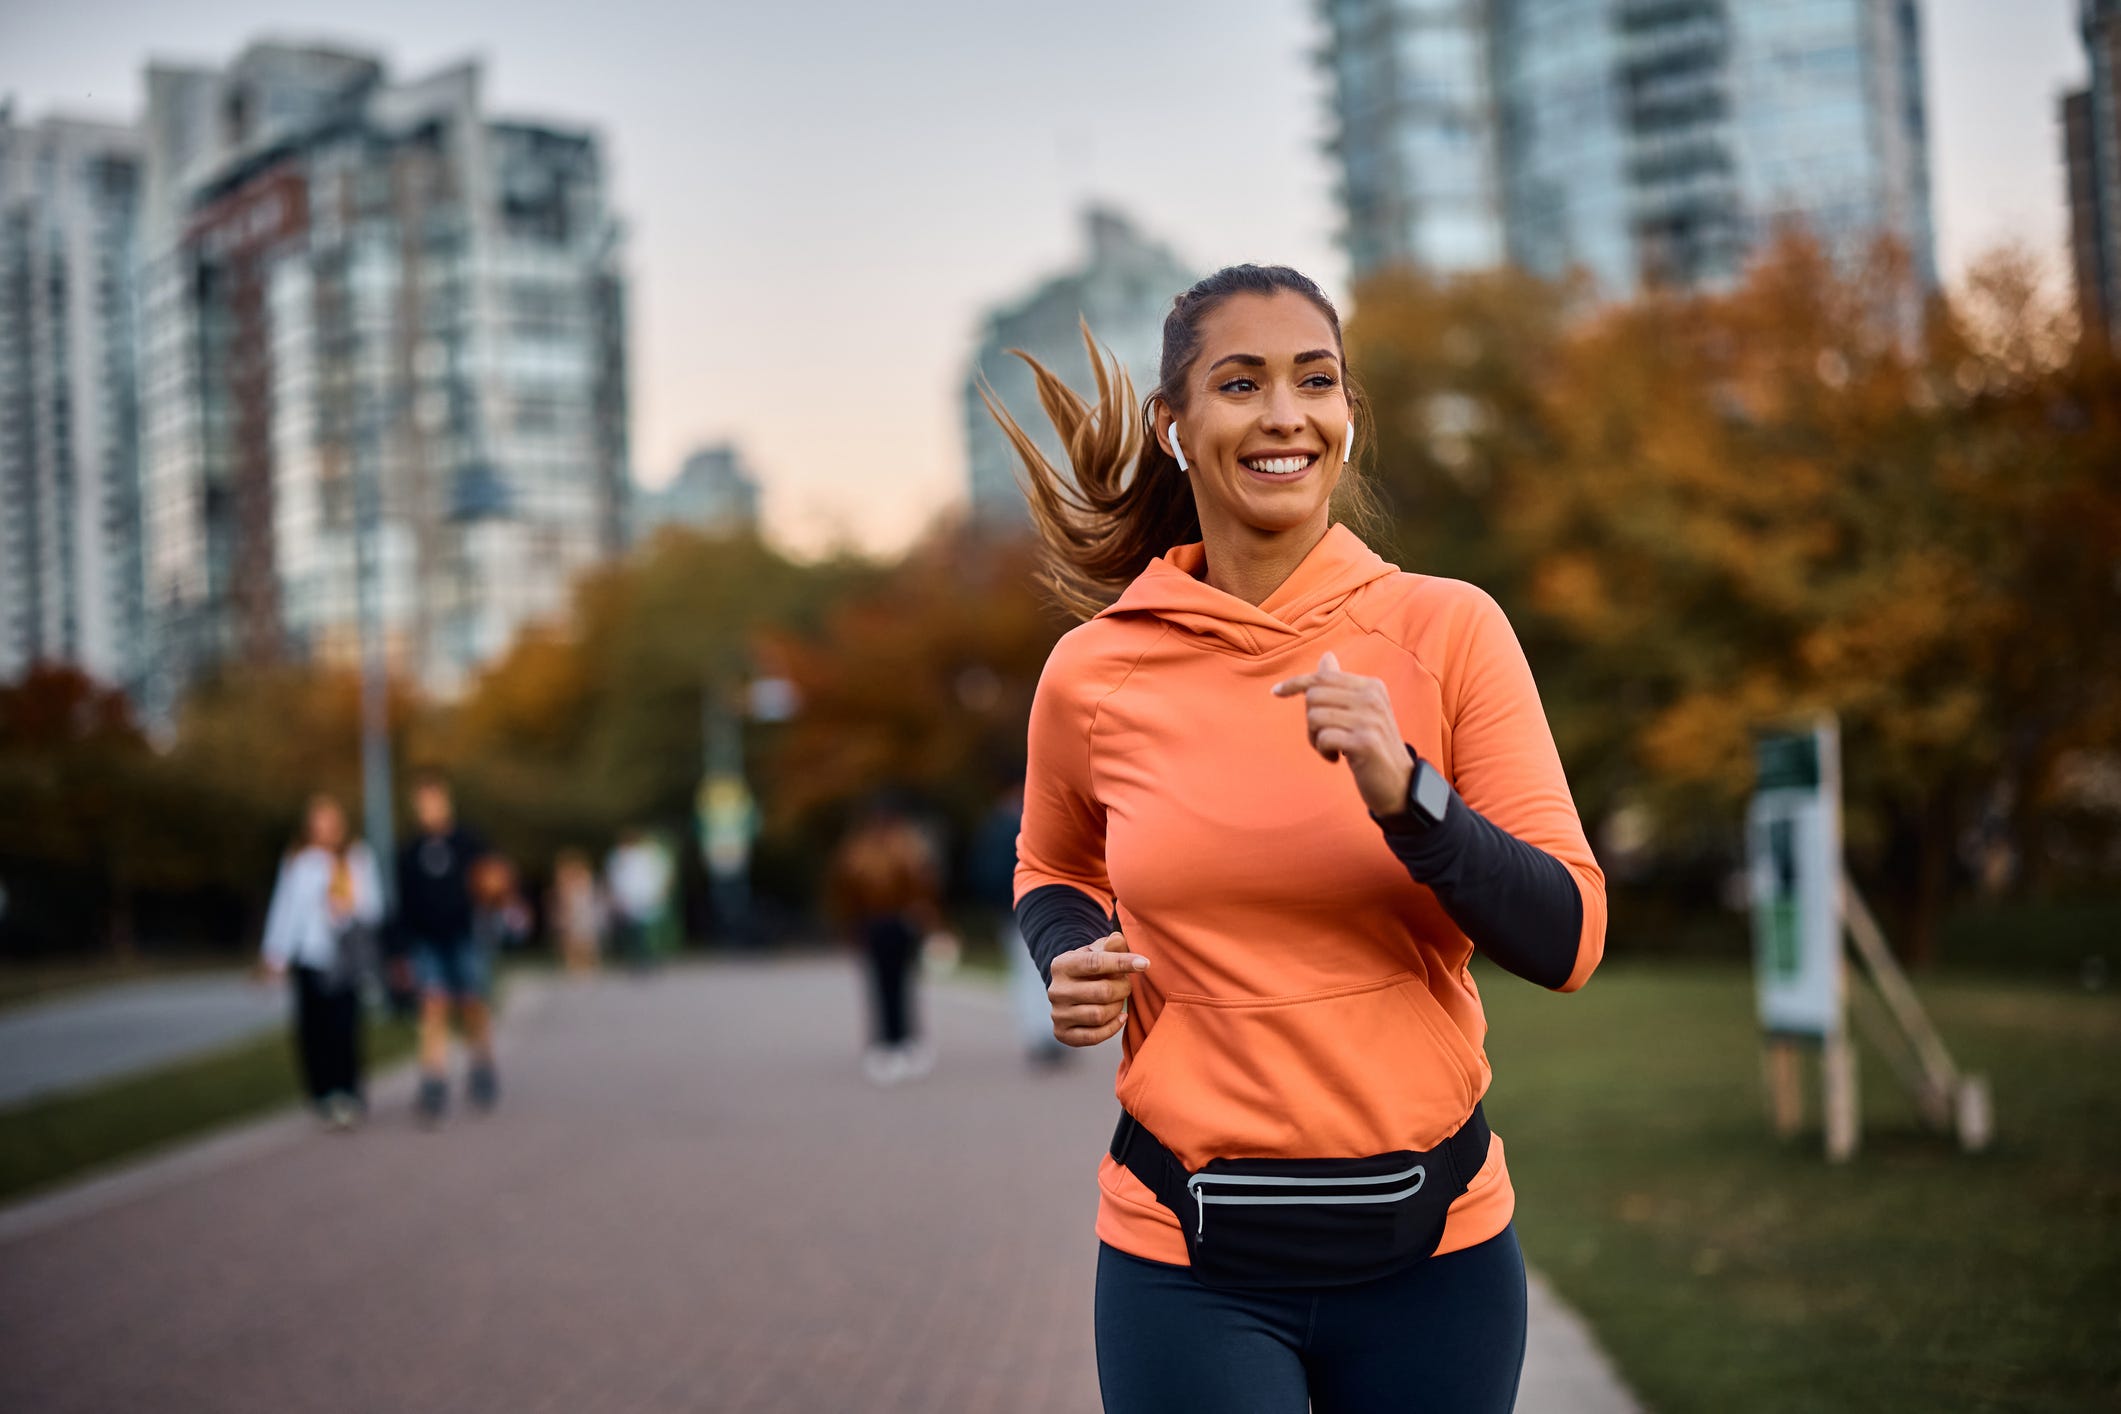 Eine Frau joggt in einem orangefarbenen Sweatshirt und Leggings durch einen Park, trägt Ohrhörer und lächelt